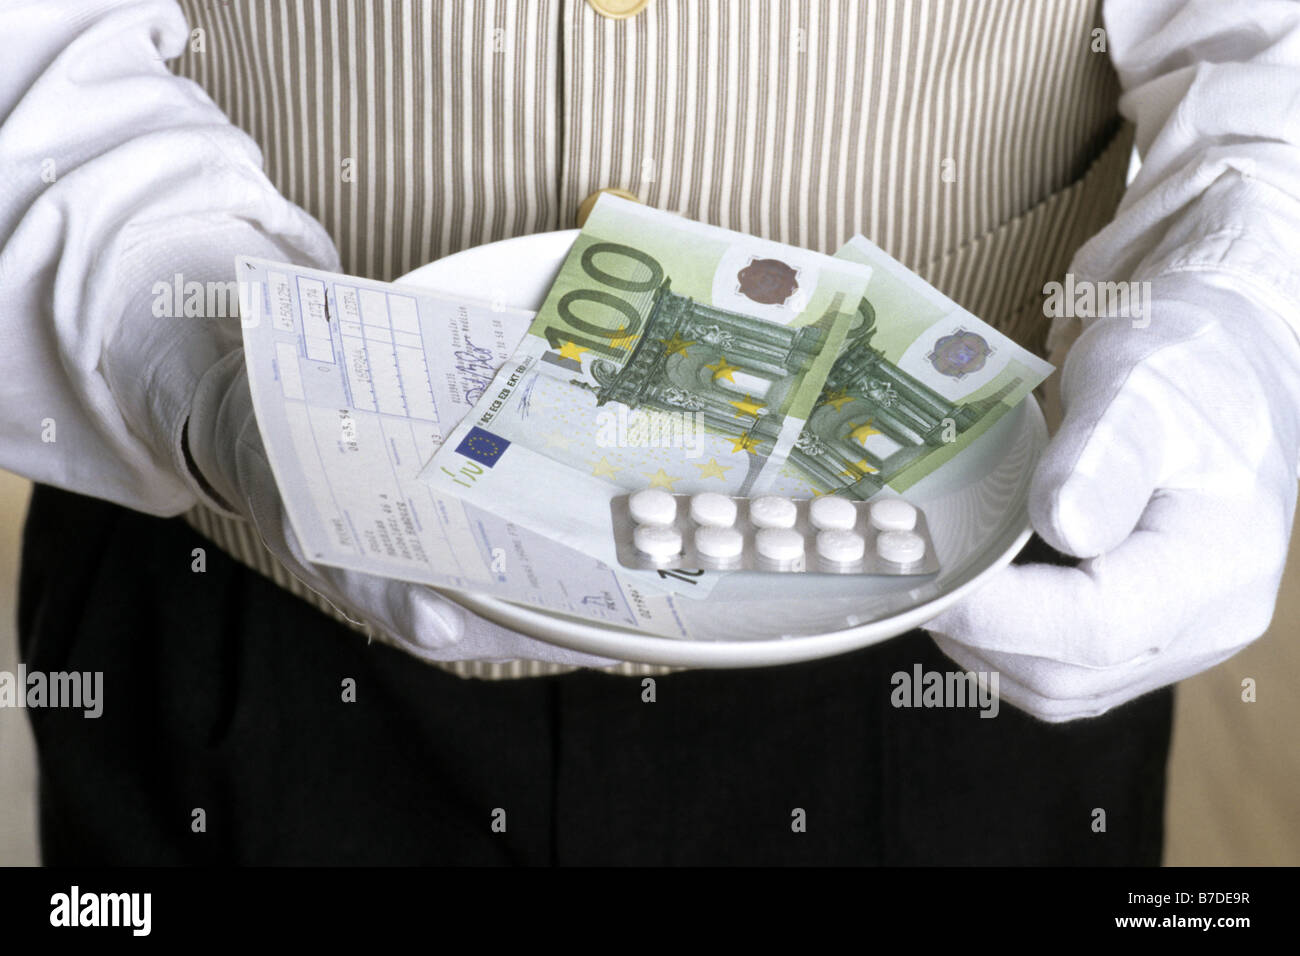 Medicene und Baknnotes auf einem Teller, Europa Stockfoto